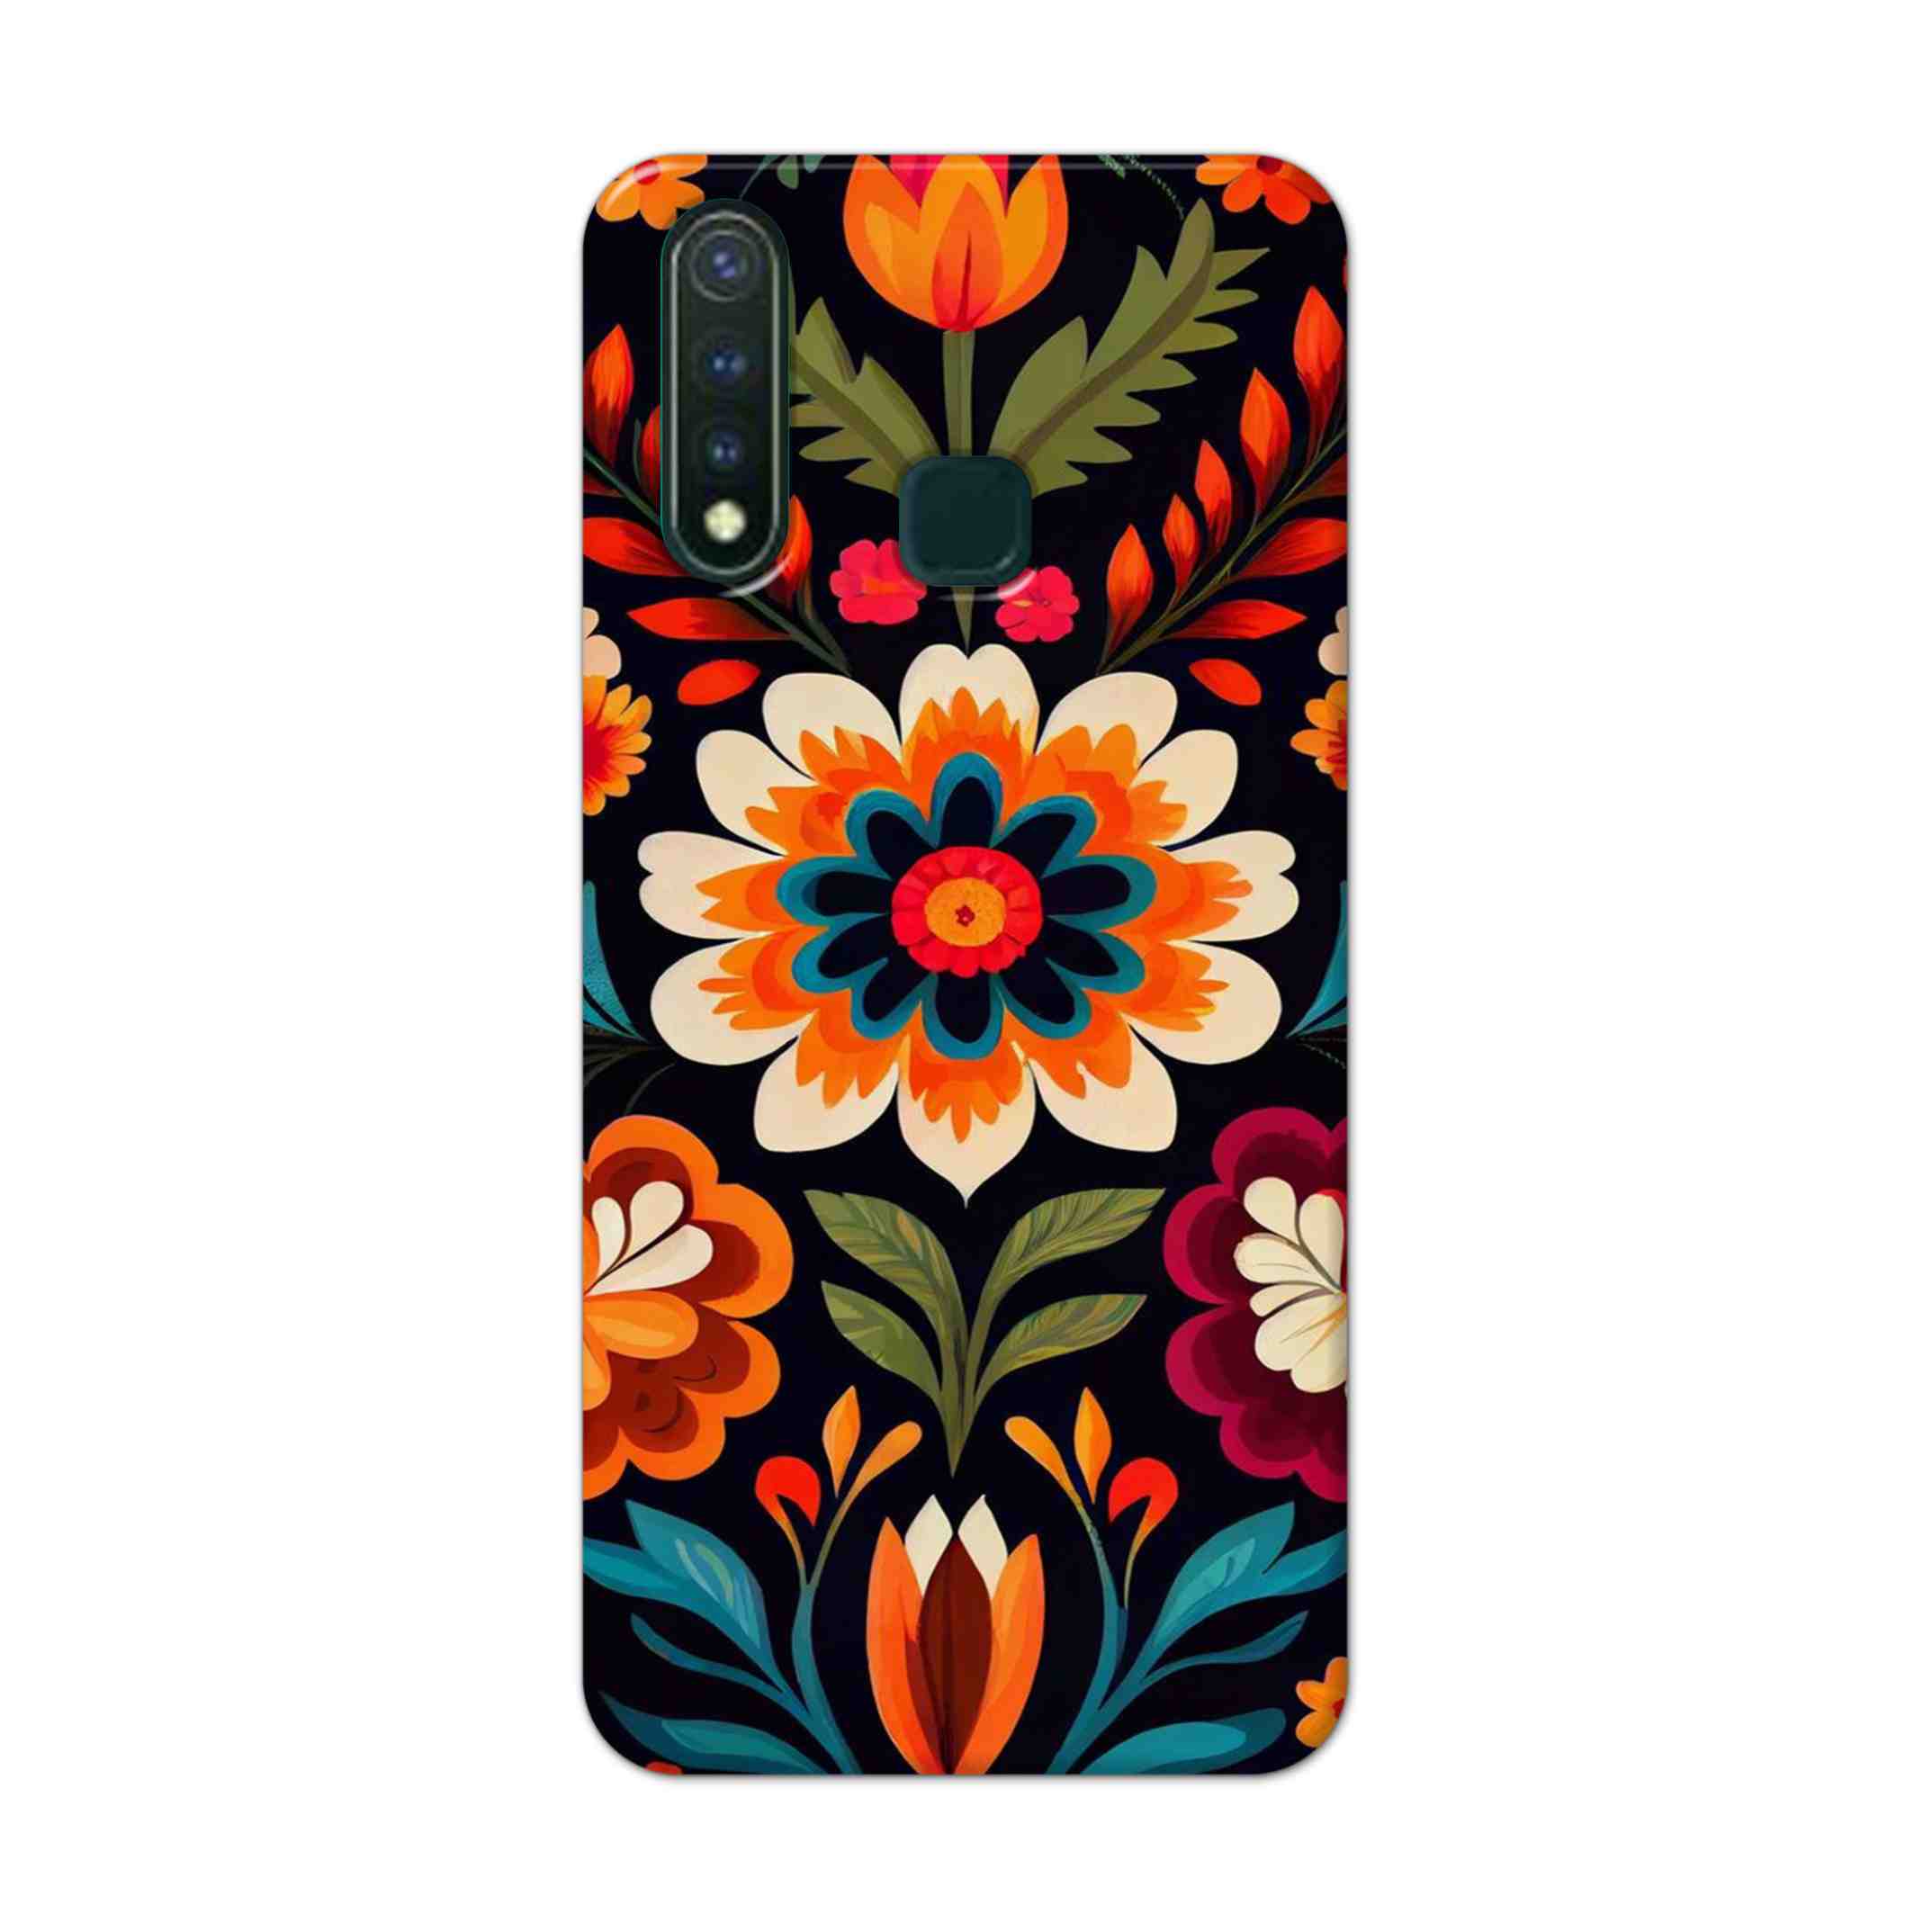 Buy Flower Hard Back Mobile Phone Case Cover For Vivo U20 Online